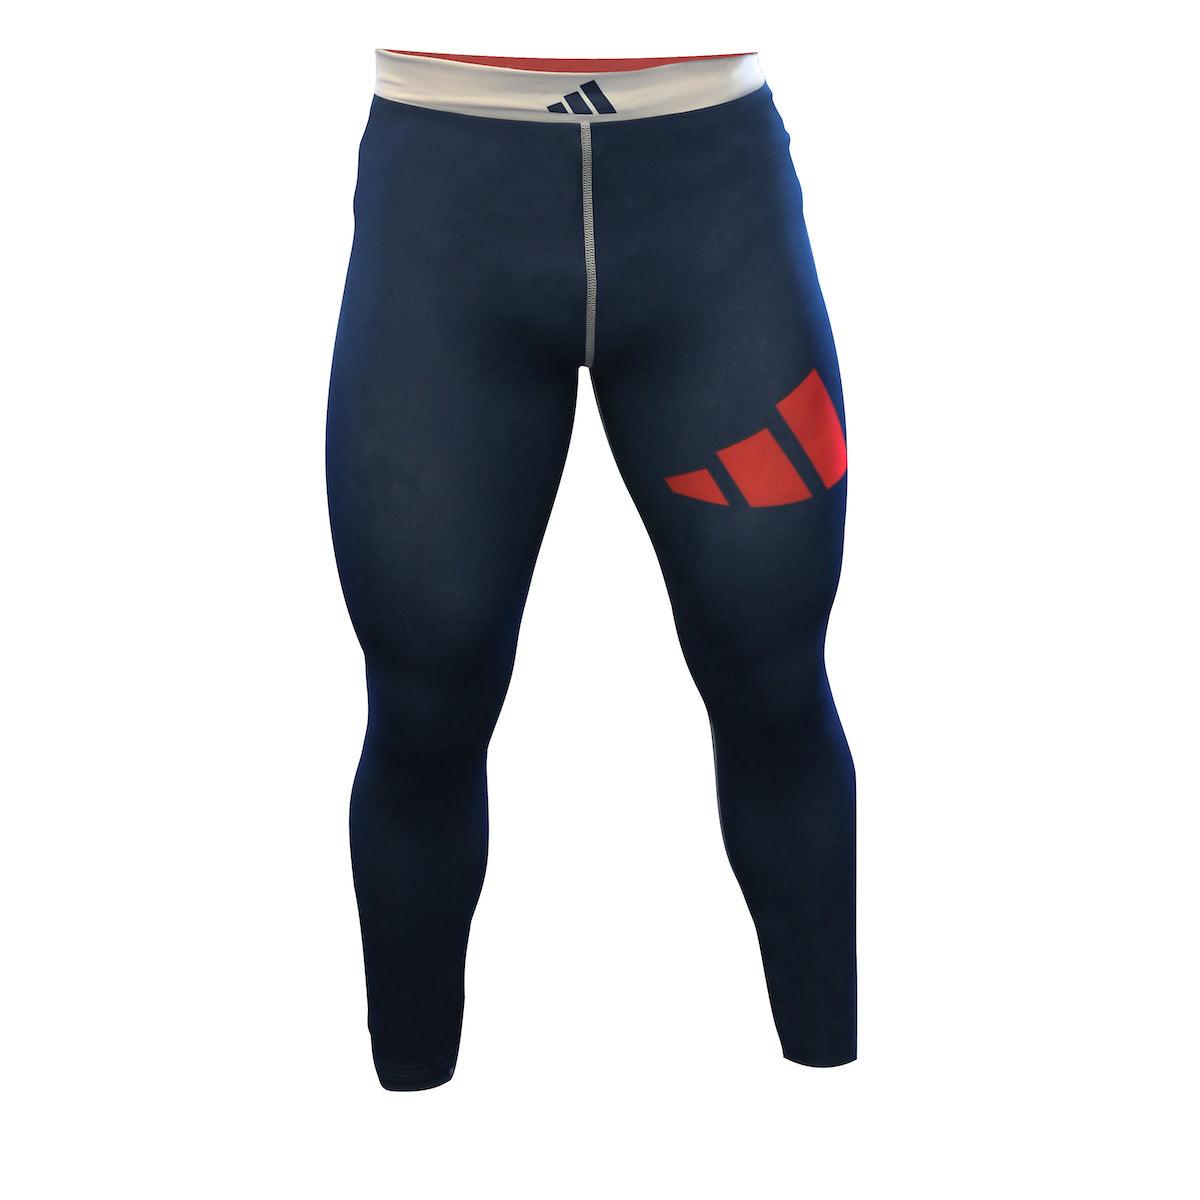 Pantalon de compression Adidas - Bleu/Blanc/Rouge ADICSP01 - Boutique des Arts Martiaux